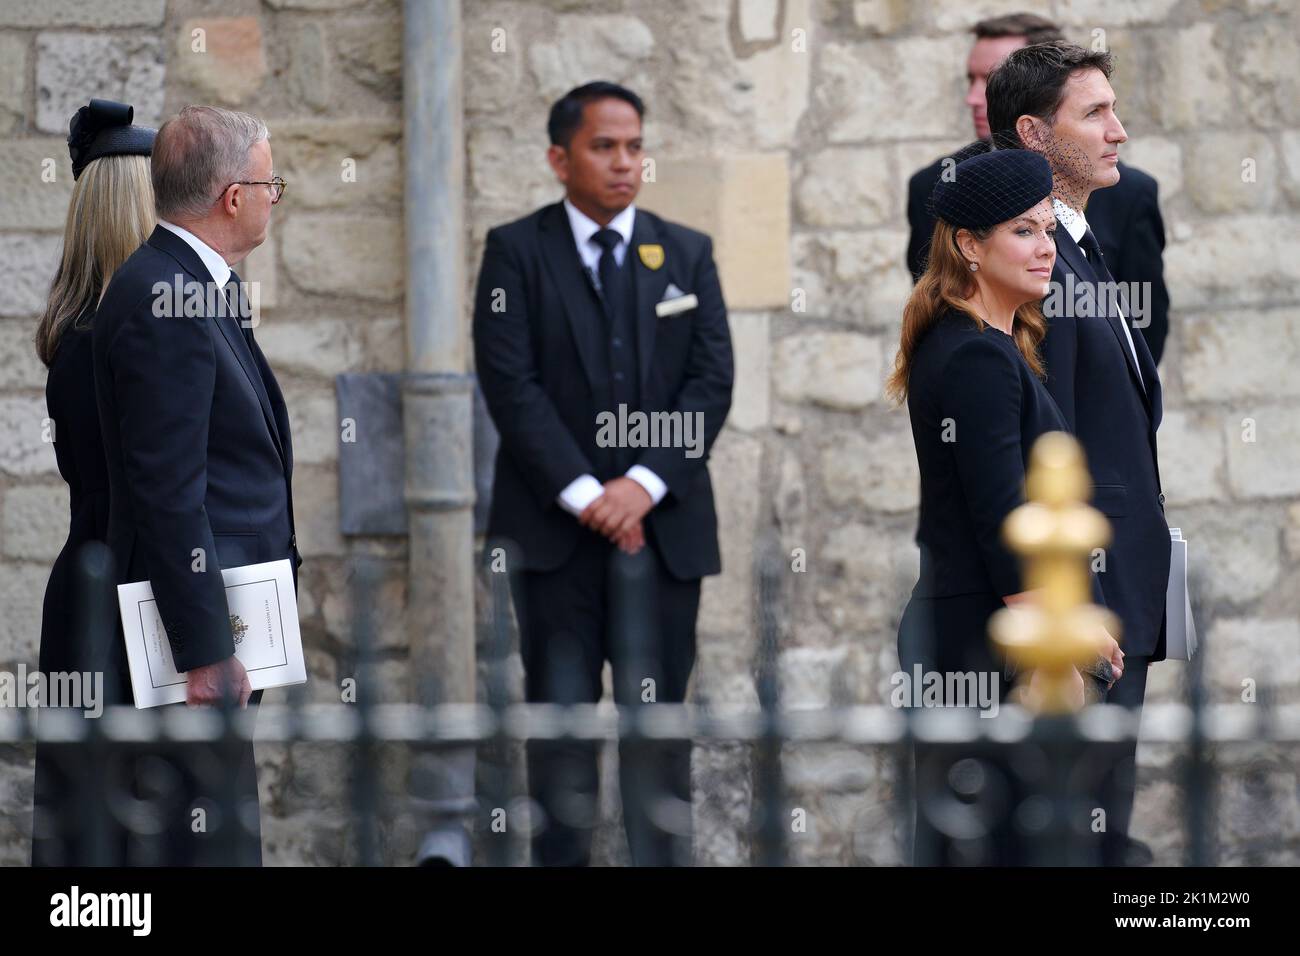 (De gauche à droite) le premier ministre de l'Australie Anthony Albanese et son associé Jodie Haydon et le premier ministre du Canada Justin Trudeau et son épouse Sophie Trudeau au funérailles d'État de la reine Elizabeth II, qui s'est tenu à Westminster Abbey, à Londres. Date de la photo: Lundi 19 septembre 2022. Banque D'Images